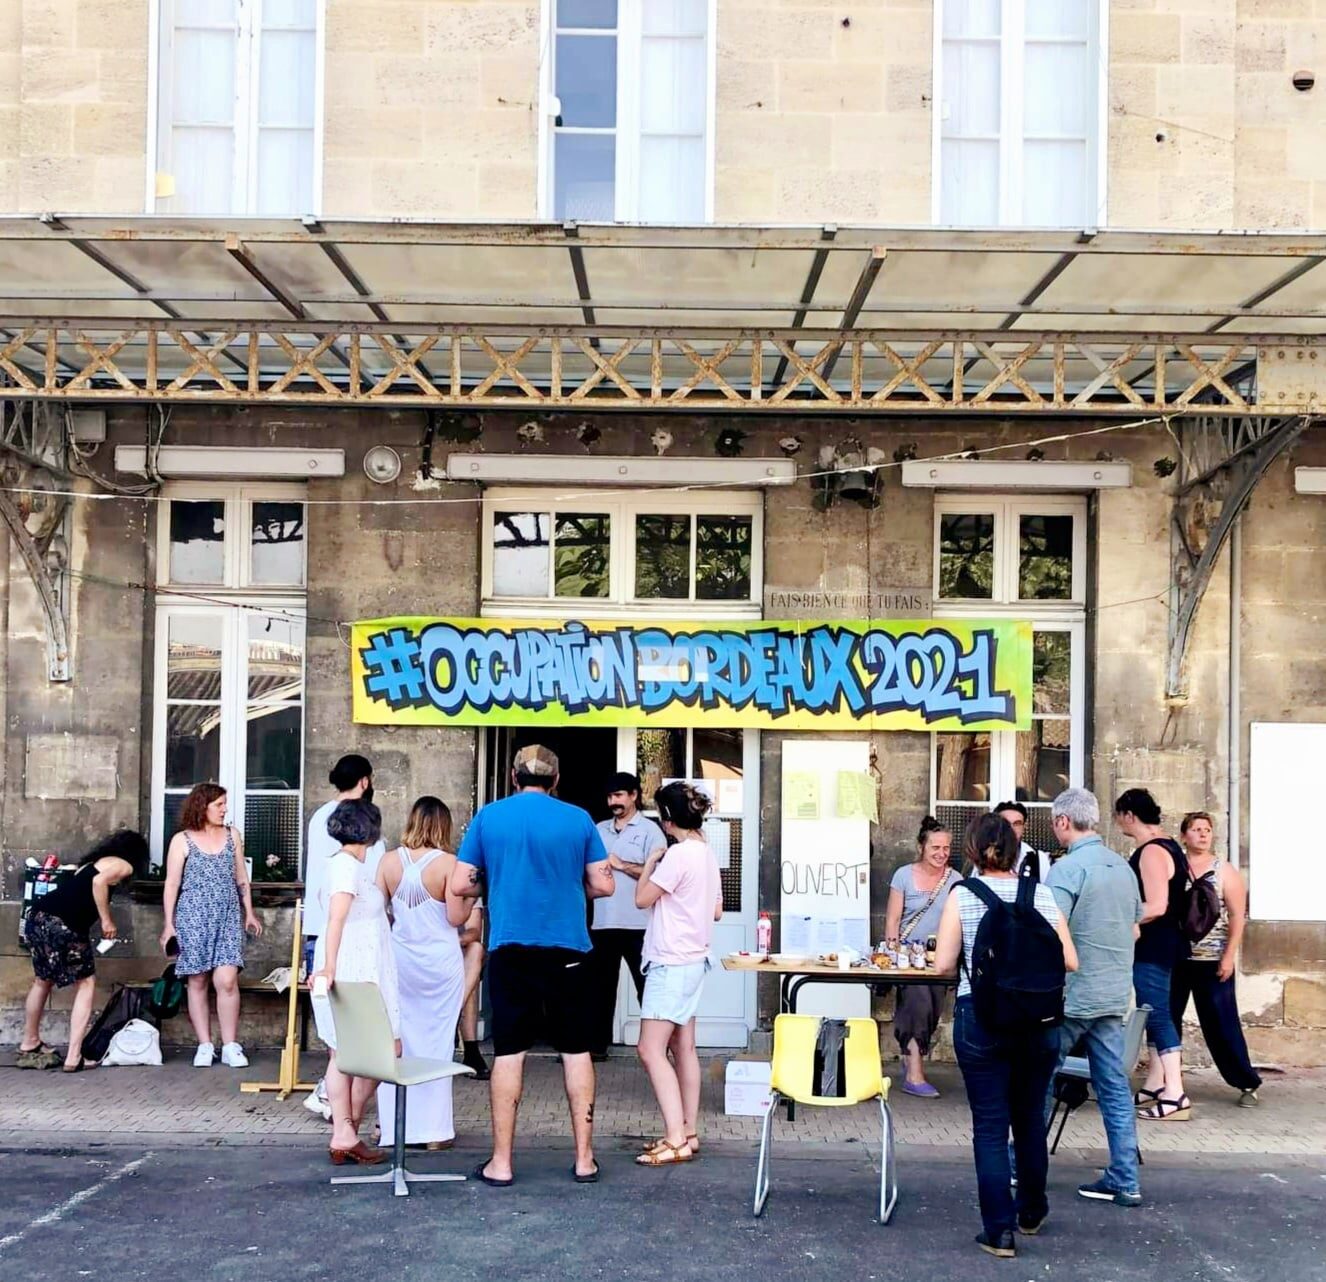 Occupation Bordeaux 2021 doit quitter l’ancien collège Fieffé